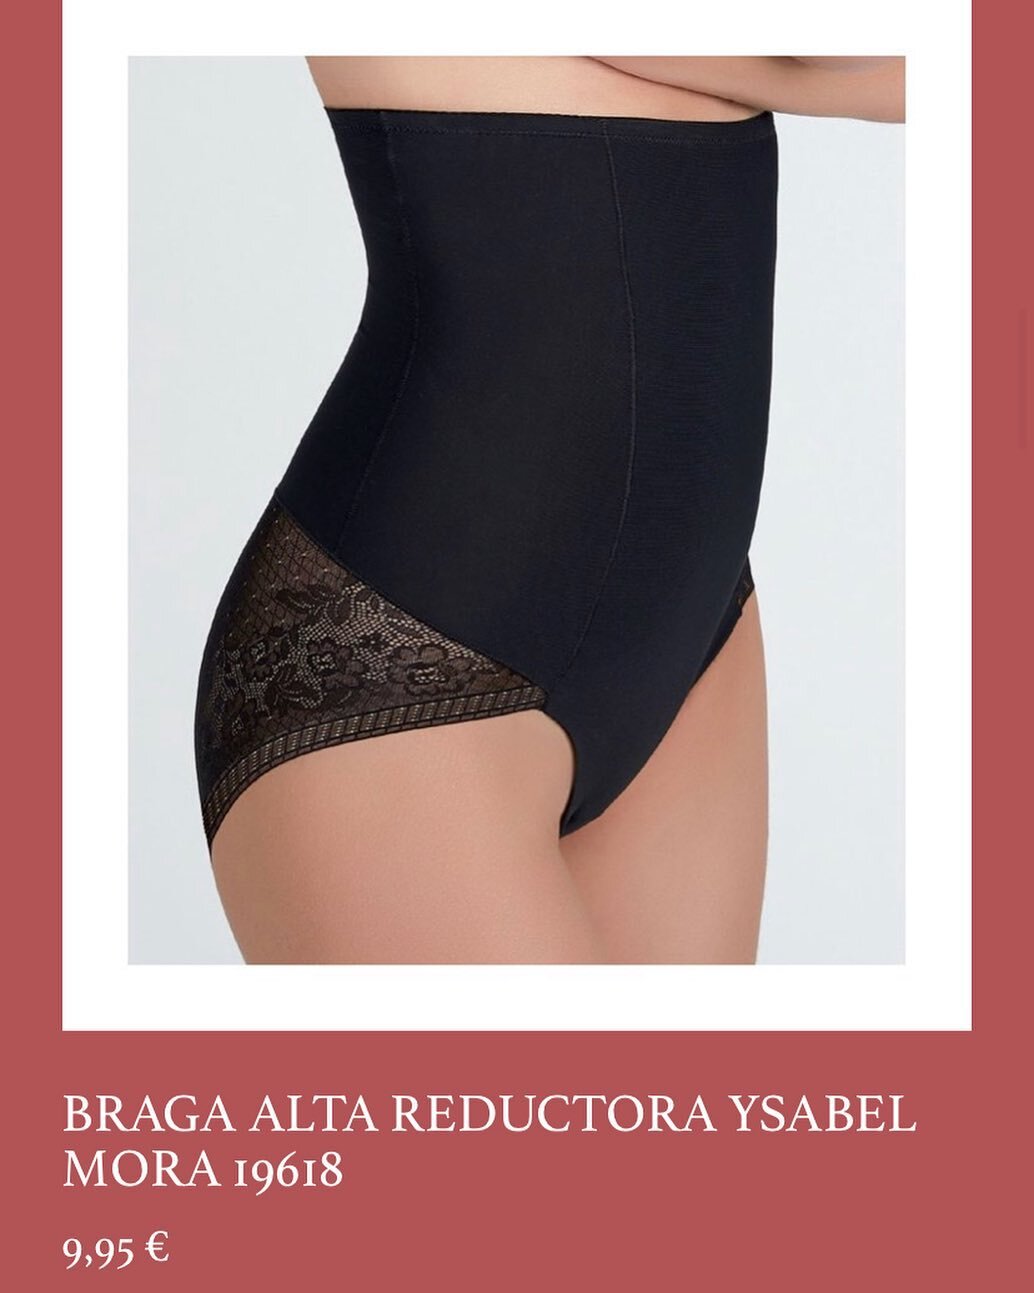 Braga alta reductora, para poner con cualquier prenda de vestir y estilizar la silueta 🥰
.
#bragareductora #bragafaja #braguitas #ysabelmora #lenceria #lenceriaonline